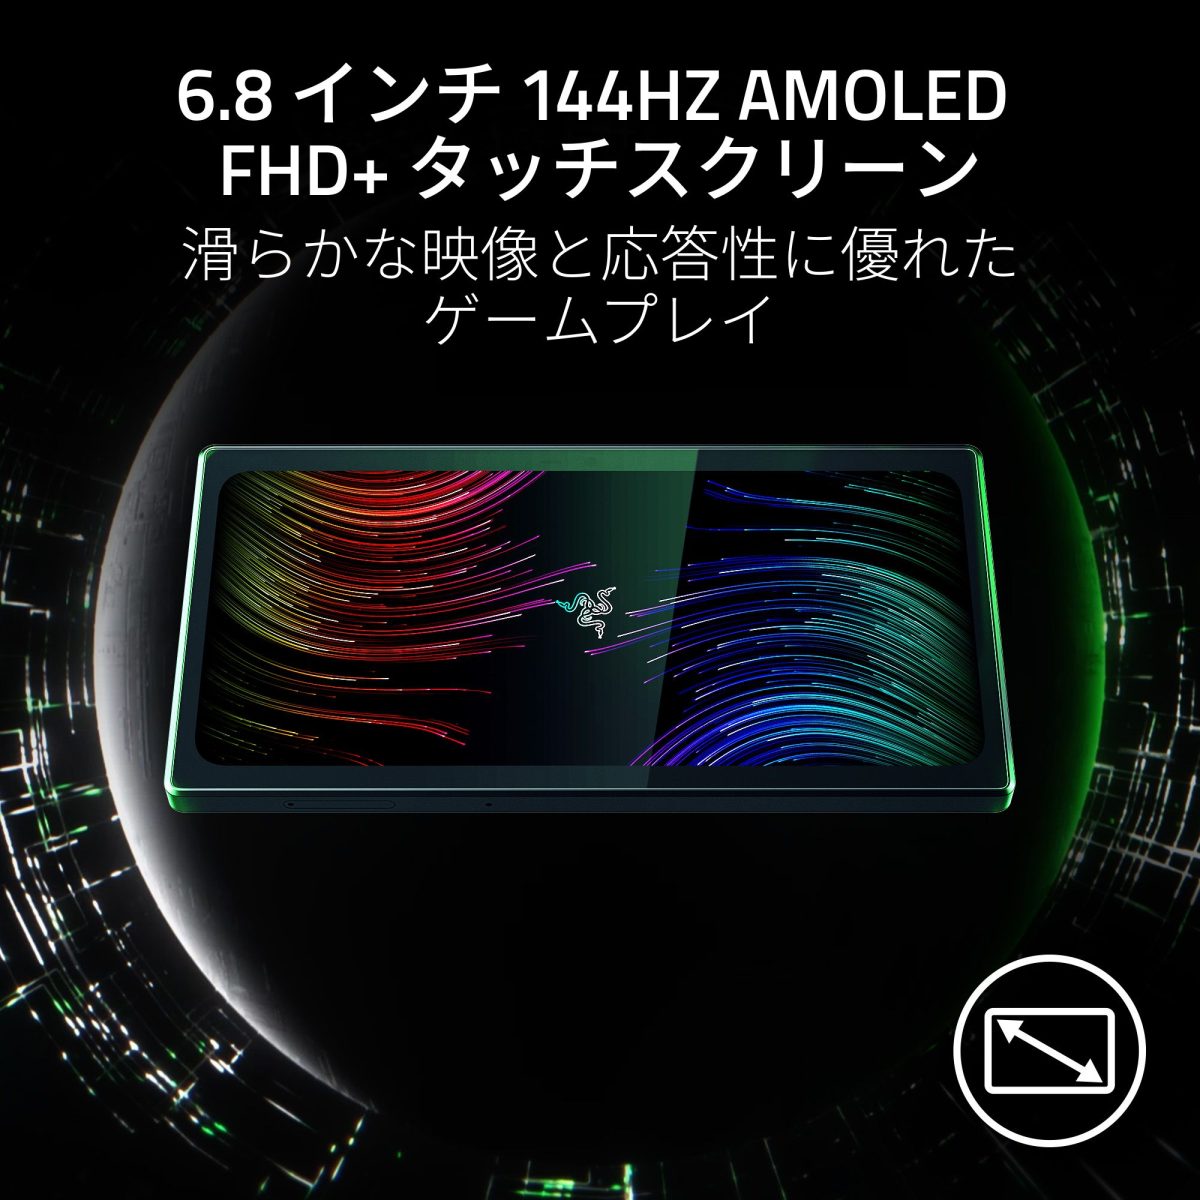 圧倒的性能を誇るAndroid携帯型ゲーム端末「Razer Edge Gaming Tablet Wi-Fi モデル」「Razer Kishi V2 Pro for Android」本日10月19日予約開始